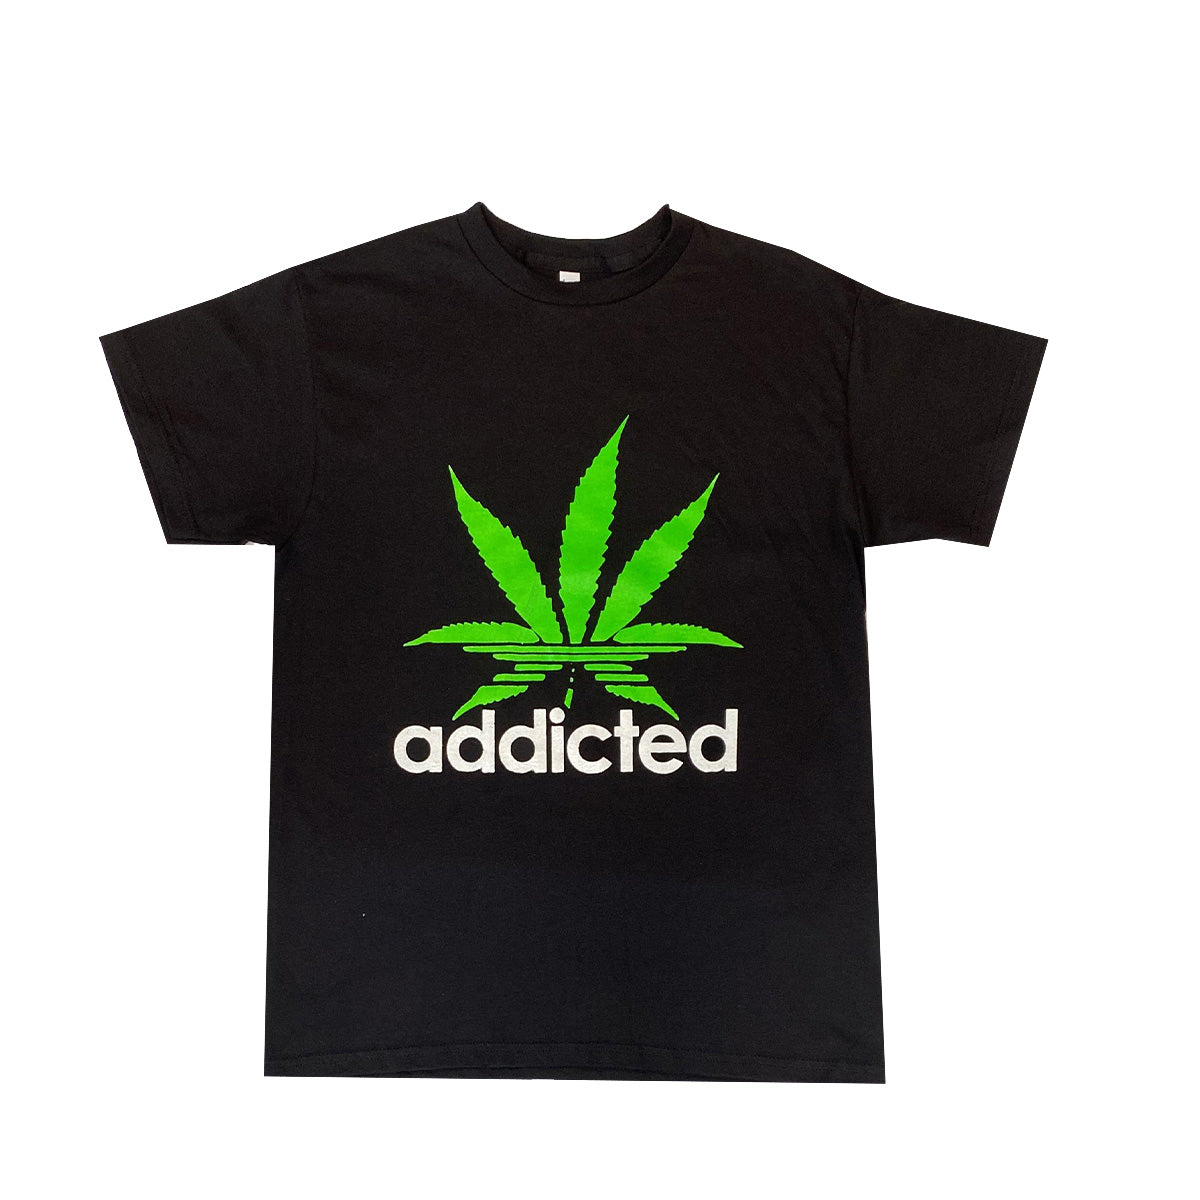 Camiseta Addicted 100% Algodón Pack de 5 Unidades, M, L, XL, XXL, XXXL